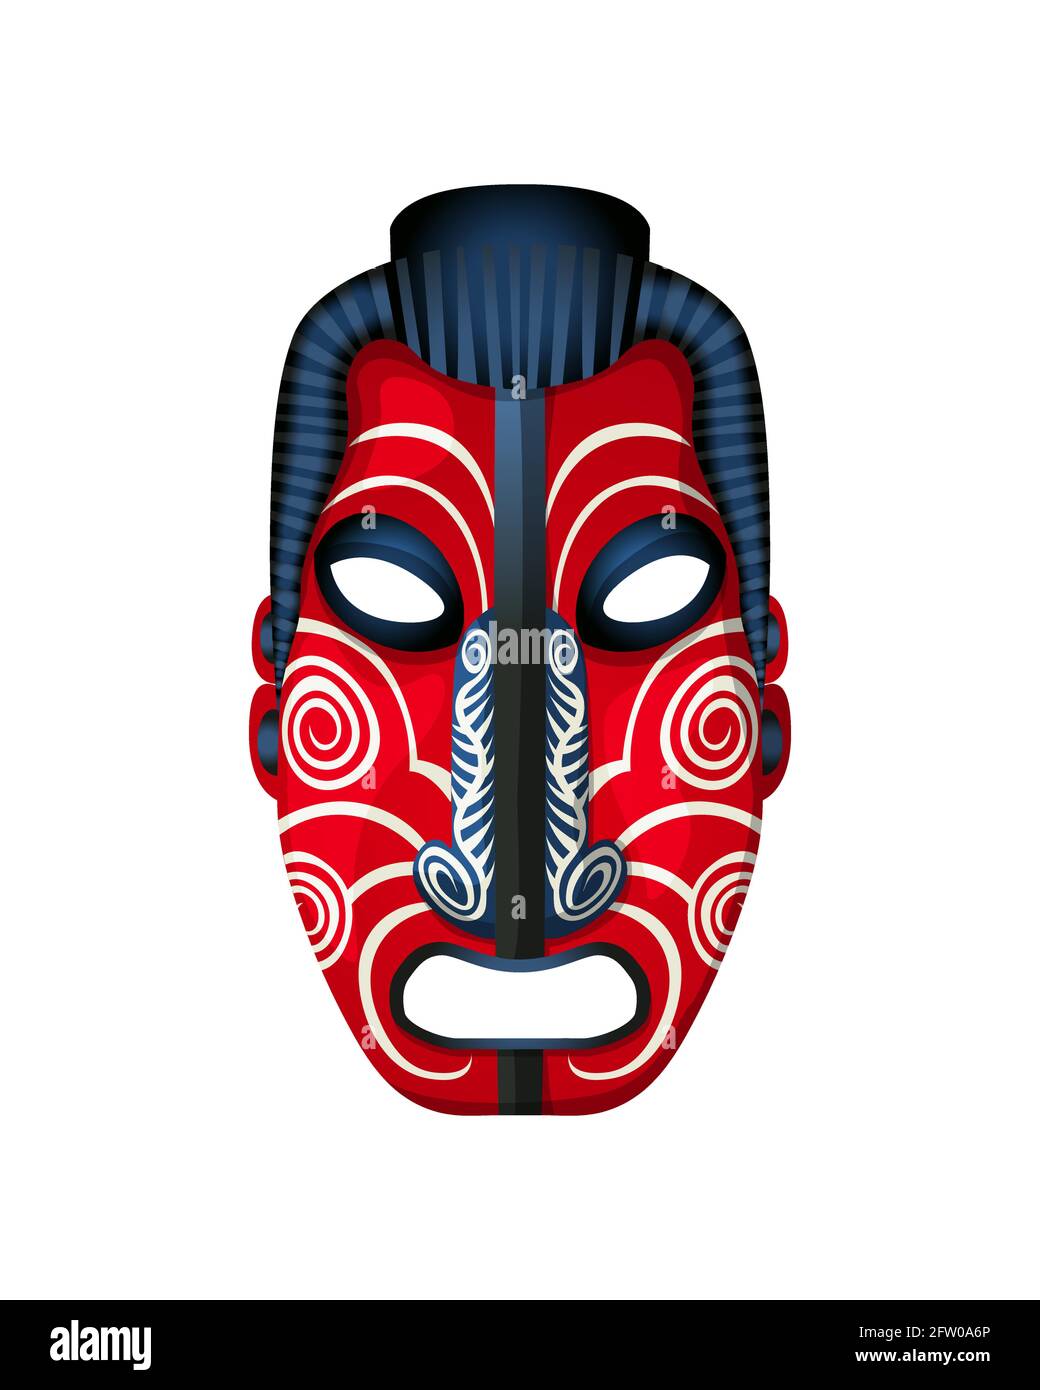 Masque maori, objet vectoriel isolé sur fond blanc Image Vectorielle Stock  - Alamy